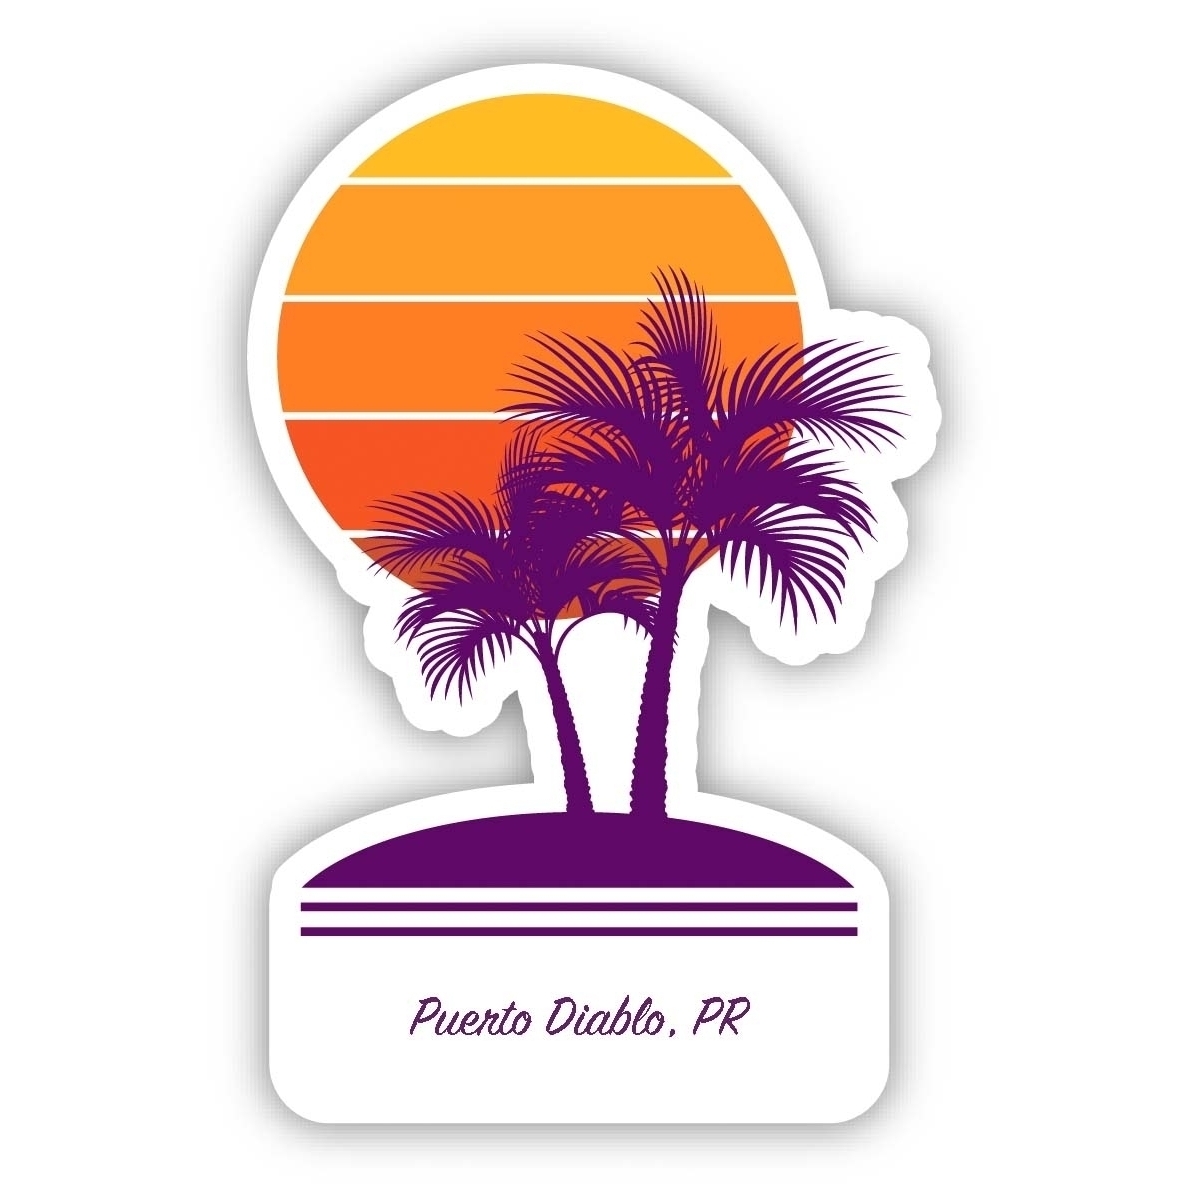 Puerto Diablo Puerto Rico Souvenir 4 Inch Vinyl Decal Sticker Palm Design